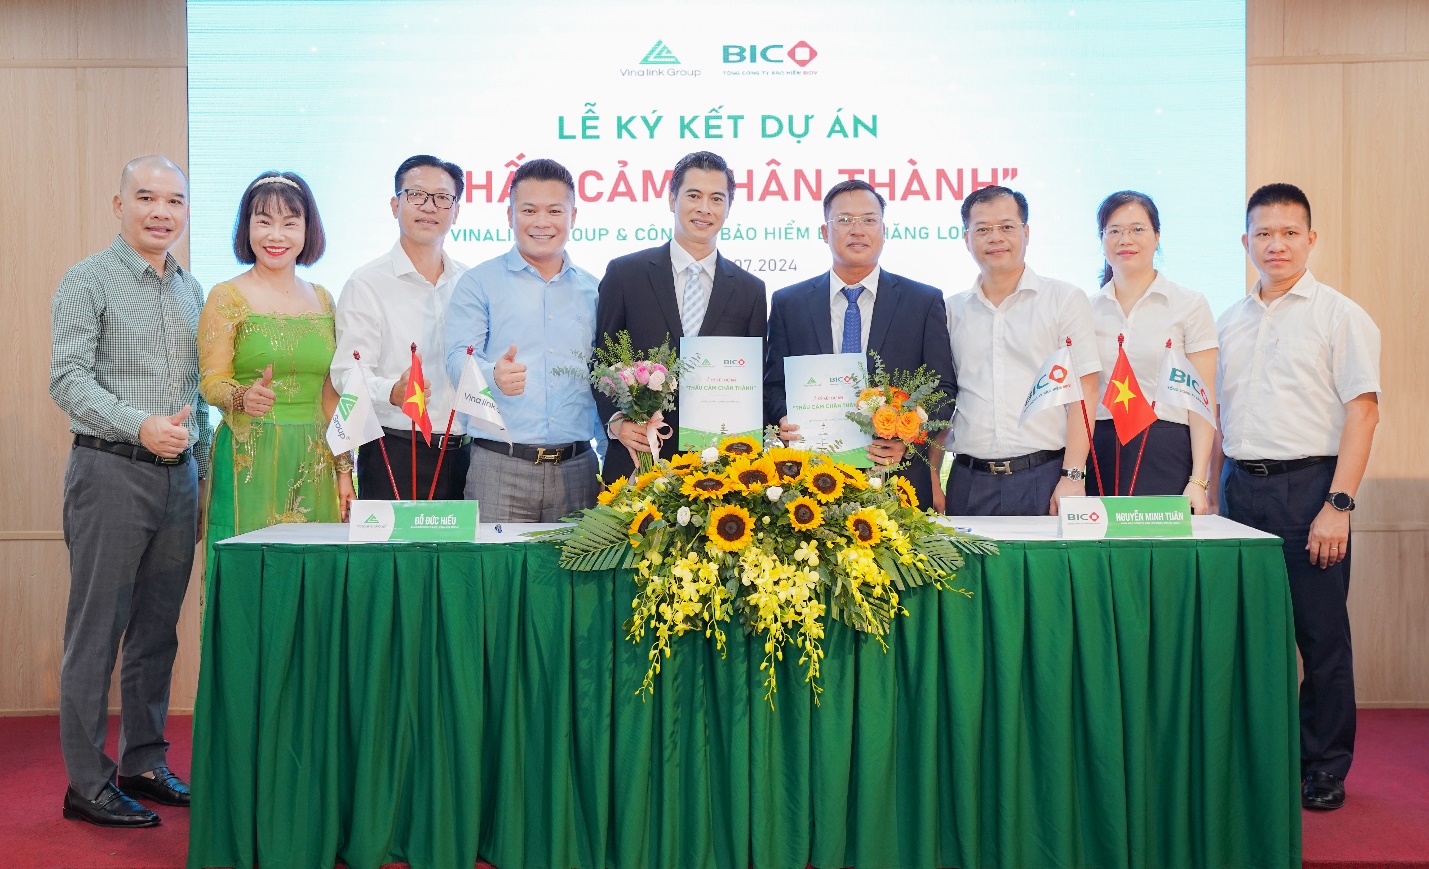 Vinalink Group và Bảo hiểm BIDV Thăng Long ký kết hợp tác chiến lược: Chung tay xây dựng “cộng đồng khỏe, đẹp, giàu” - 2